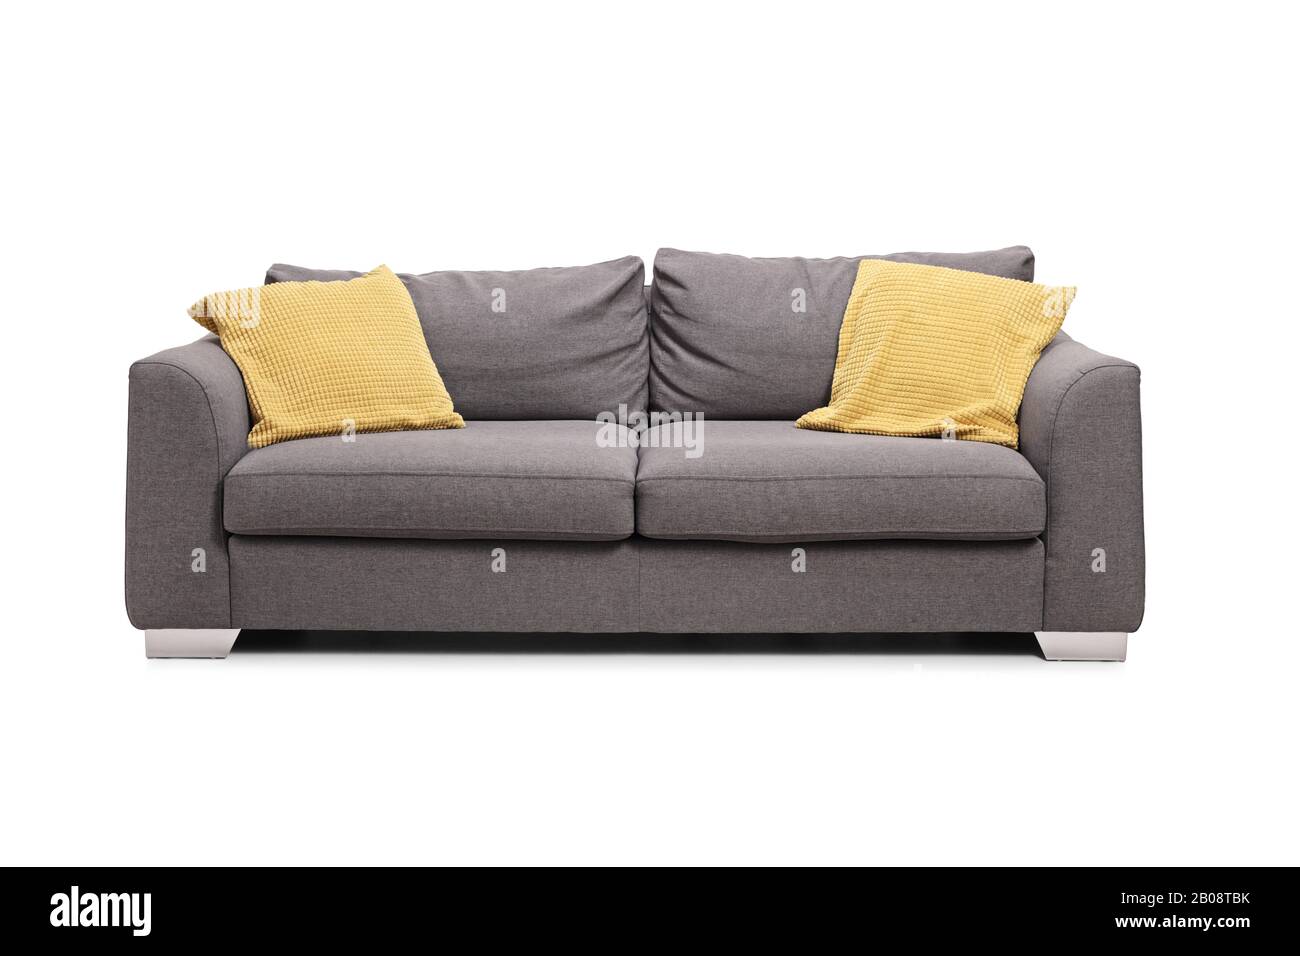 Studio mit grauem Sofa und gelben Kissen, isoliert auf weißem Hintergrund Stockfoto